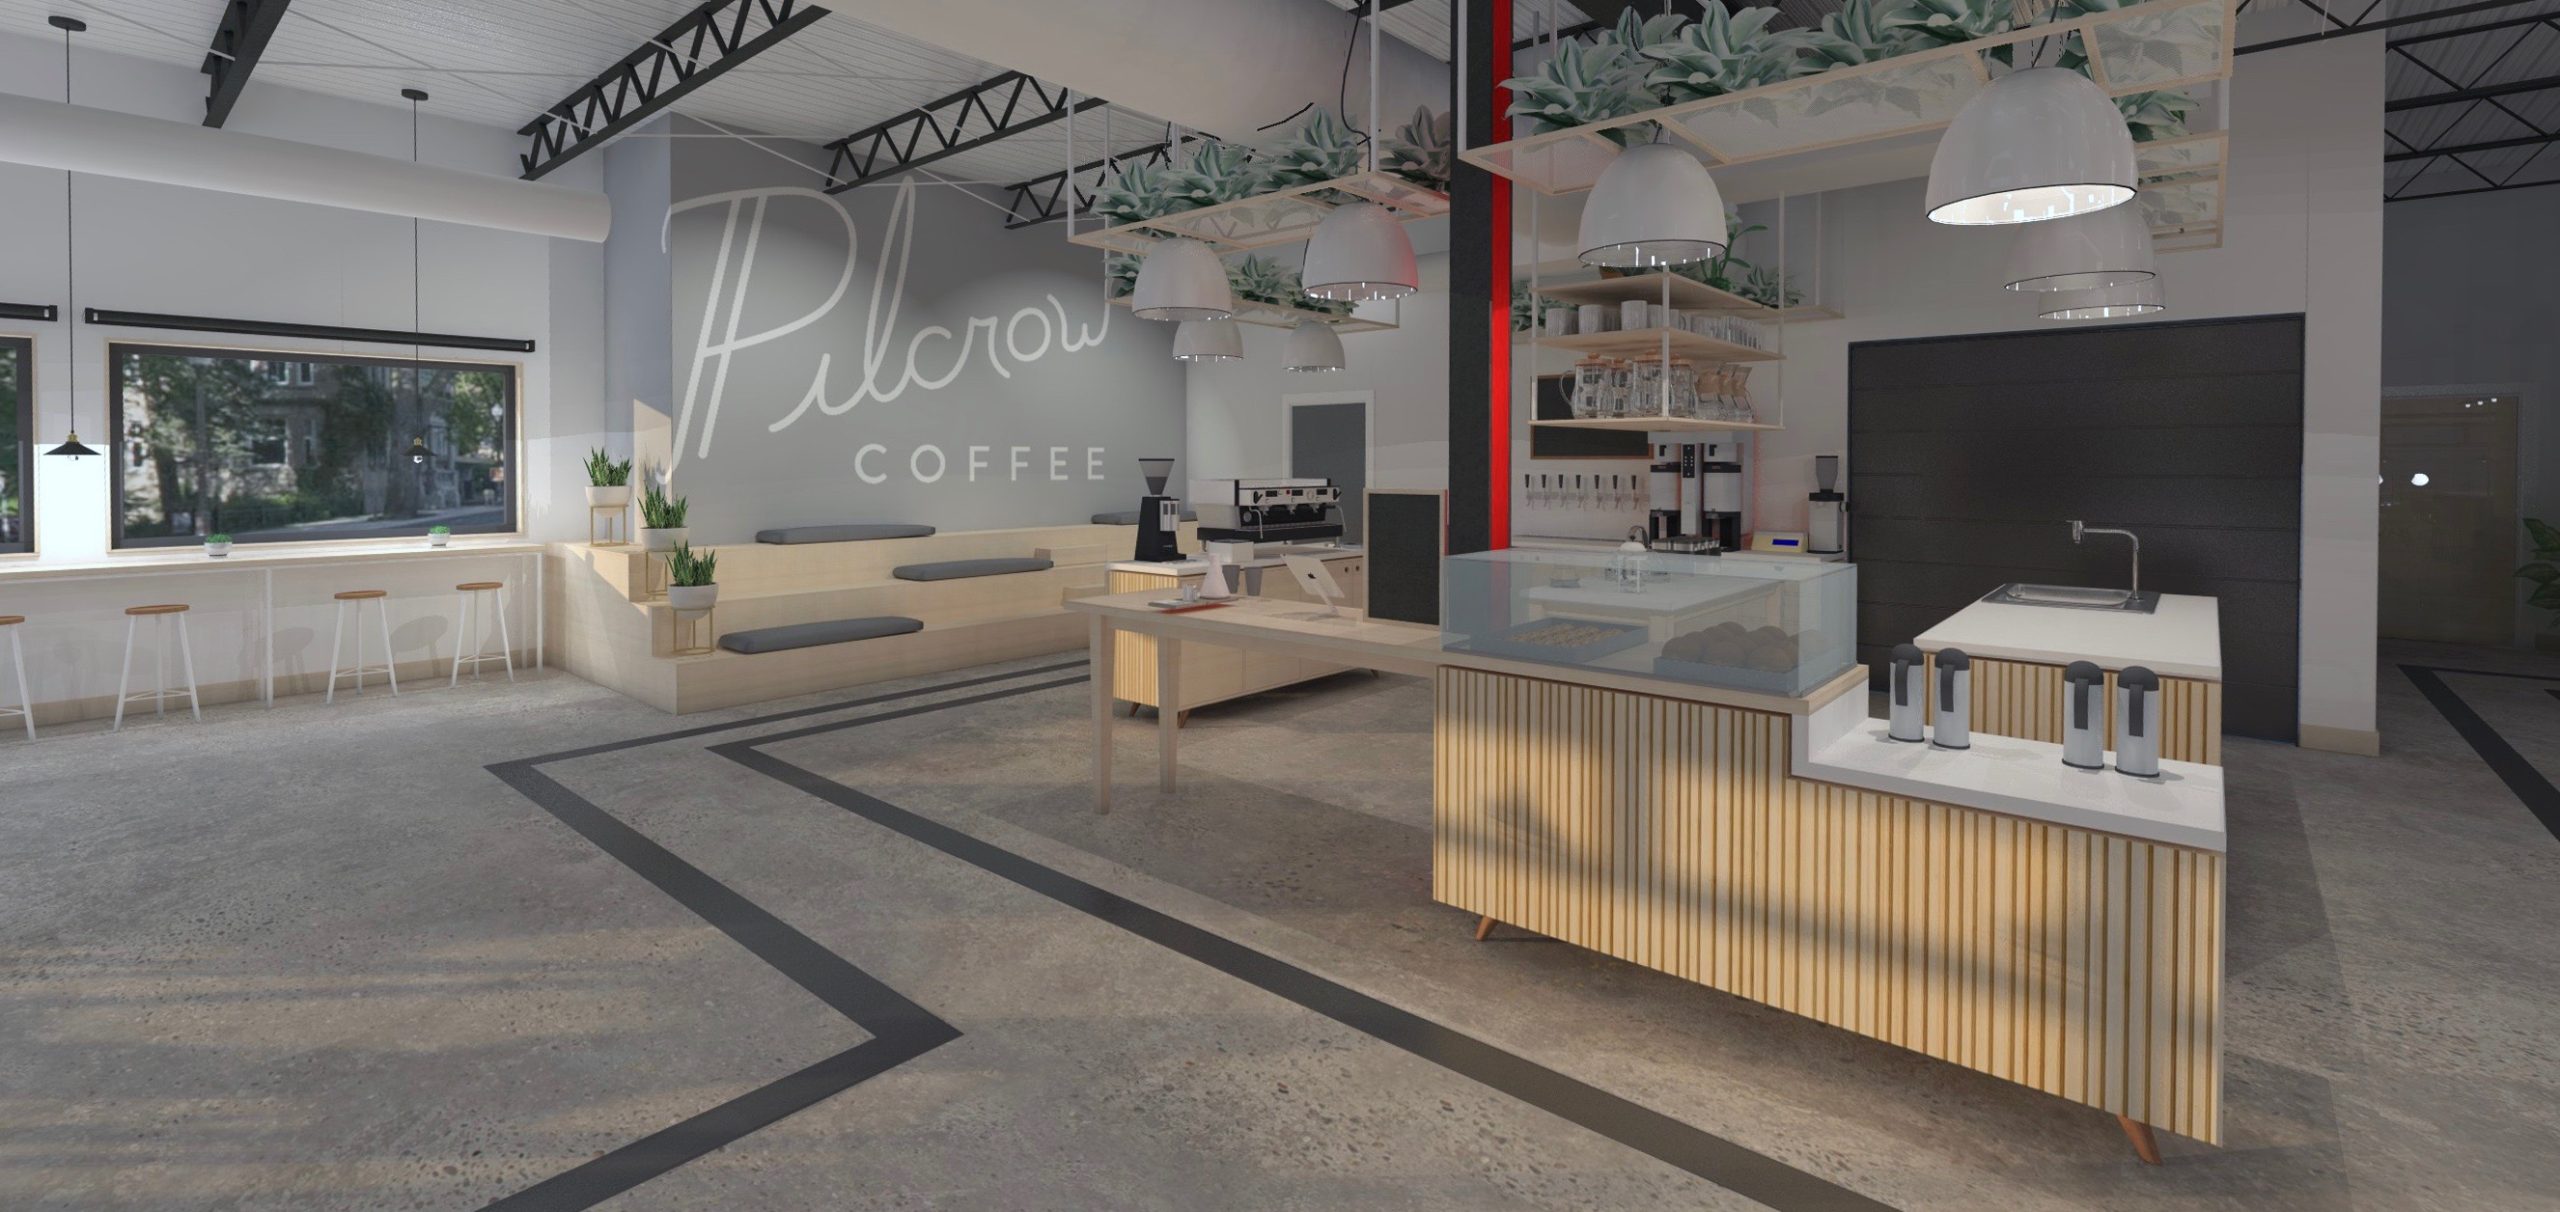 Pilcrow Coffee_NEW 2019-12-22 15151500000